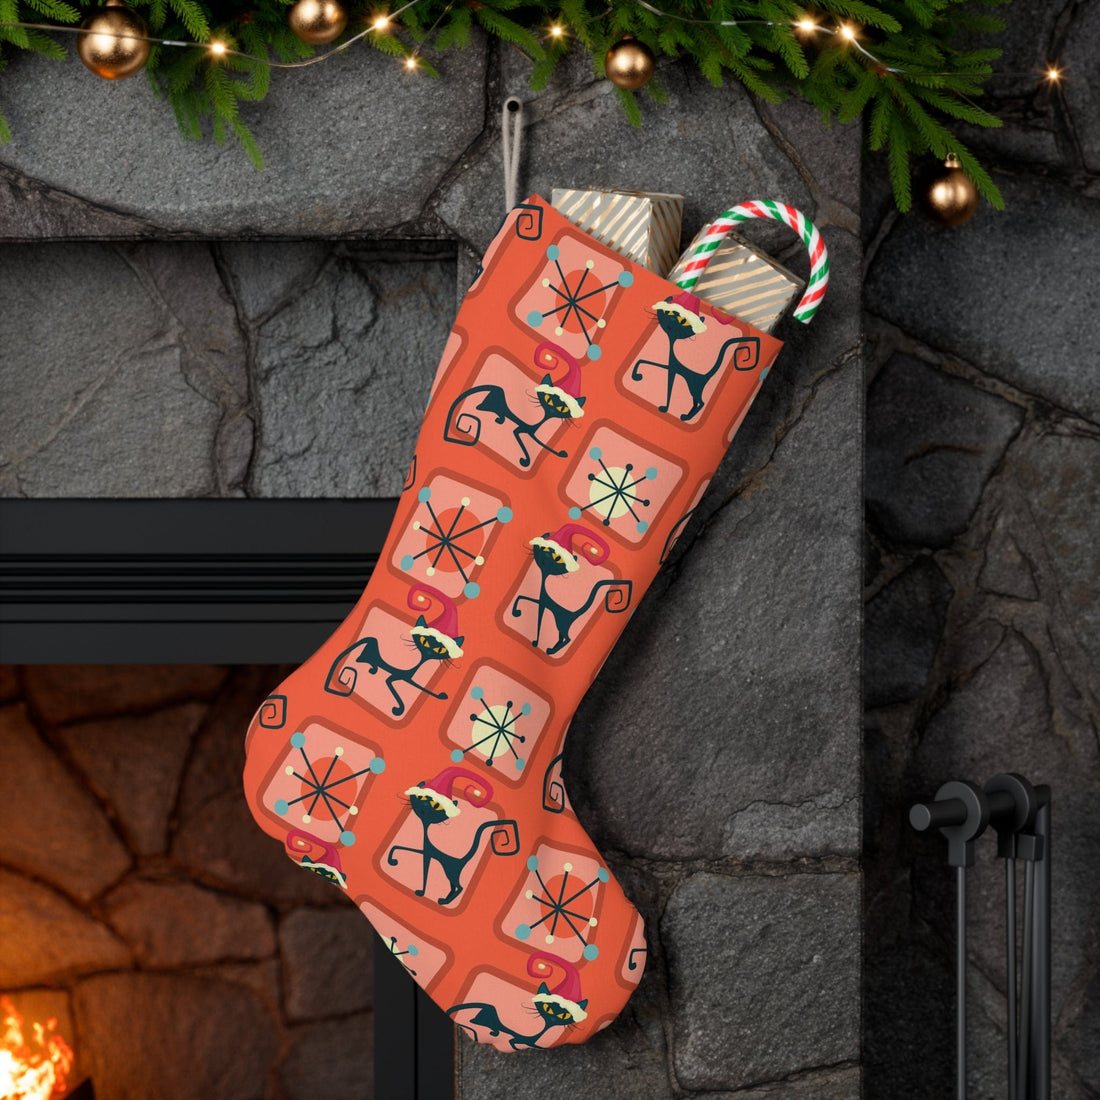 Kate McEnroe New York Retro Kitschy Atomic Cat Christmas Stocking, Mid Century Modern Santa Stockings, Holiday Mantle Decoration, MCM Holiday DecorHoliday Stockings33363576106028637793